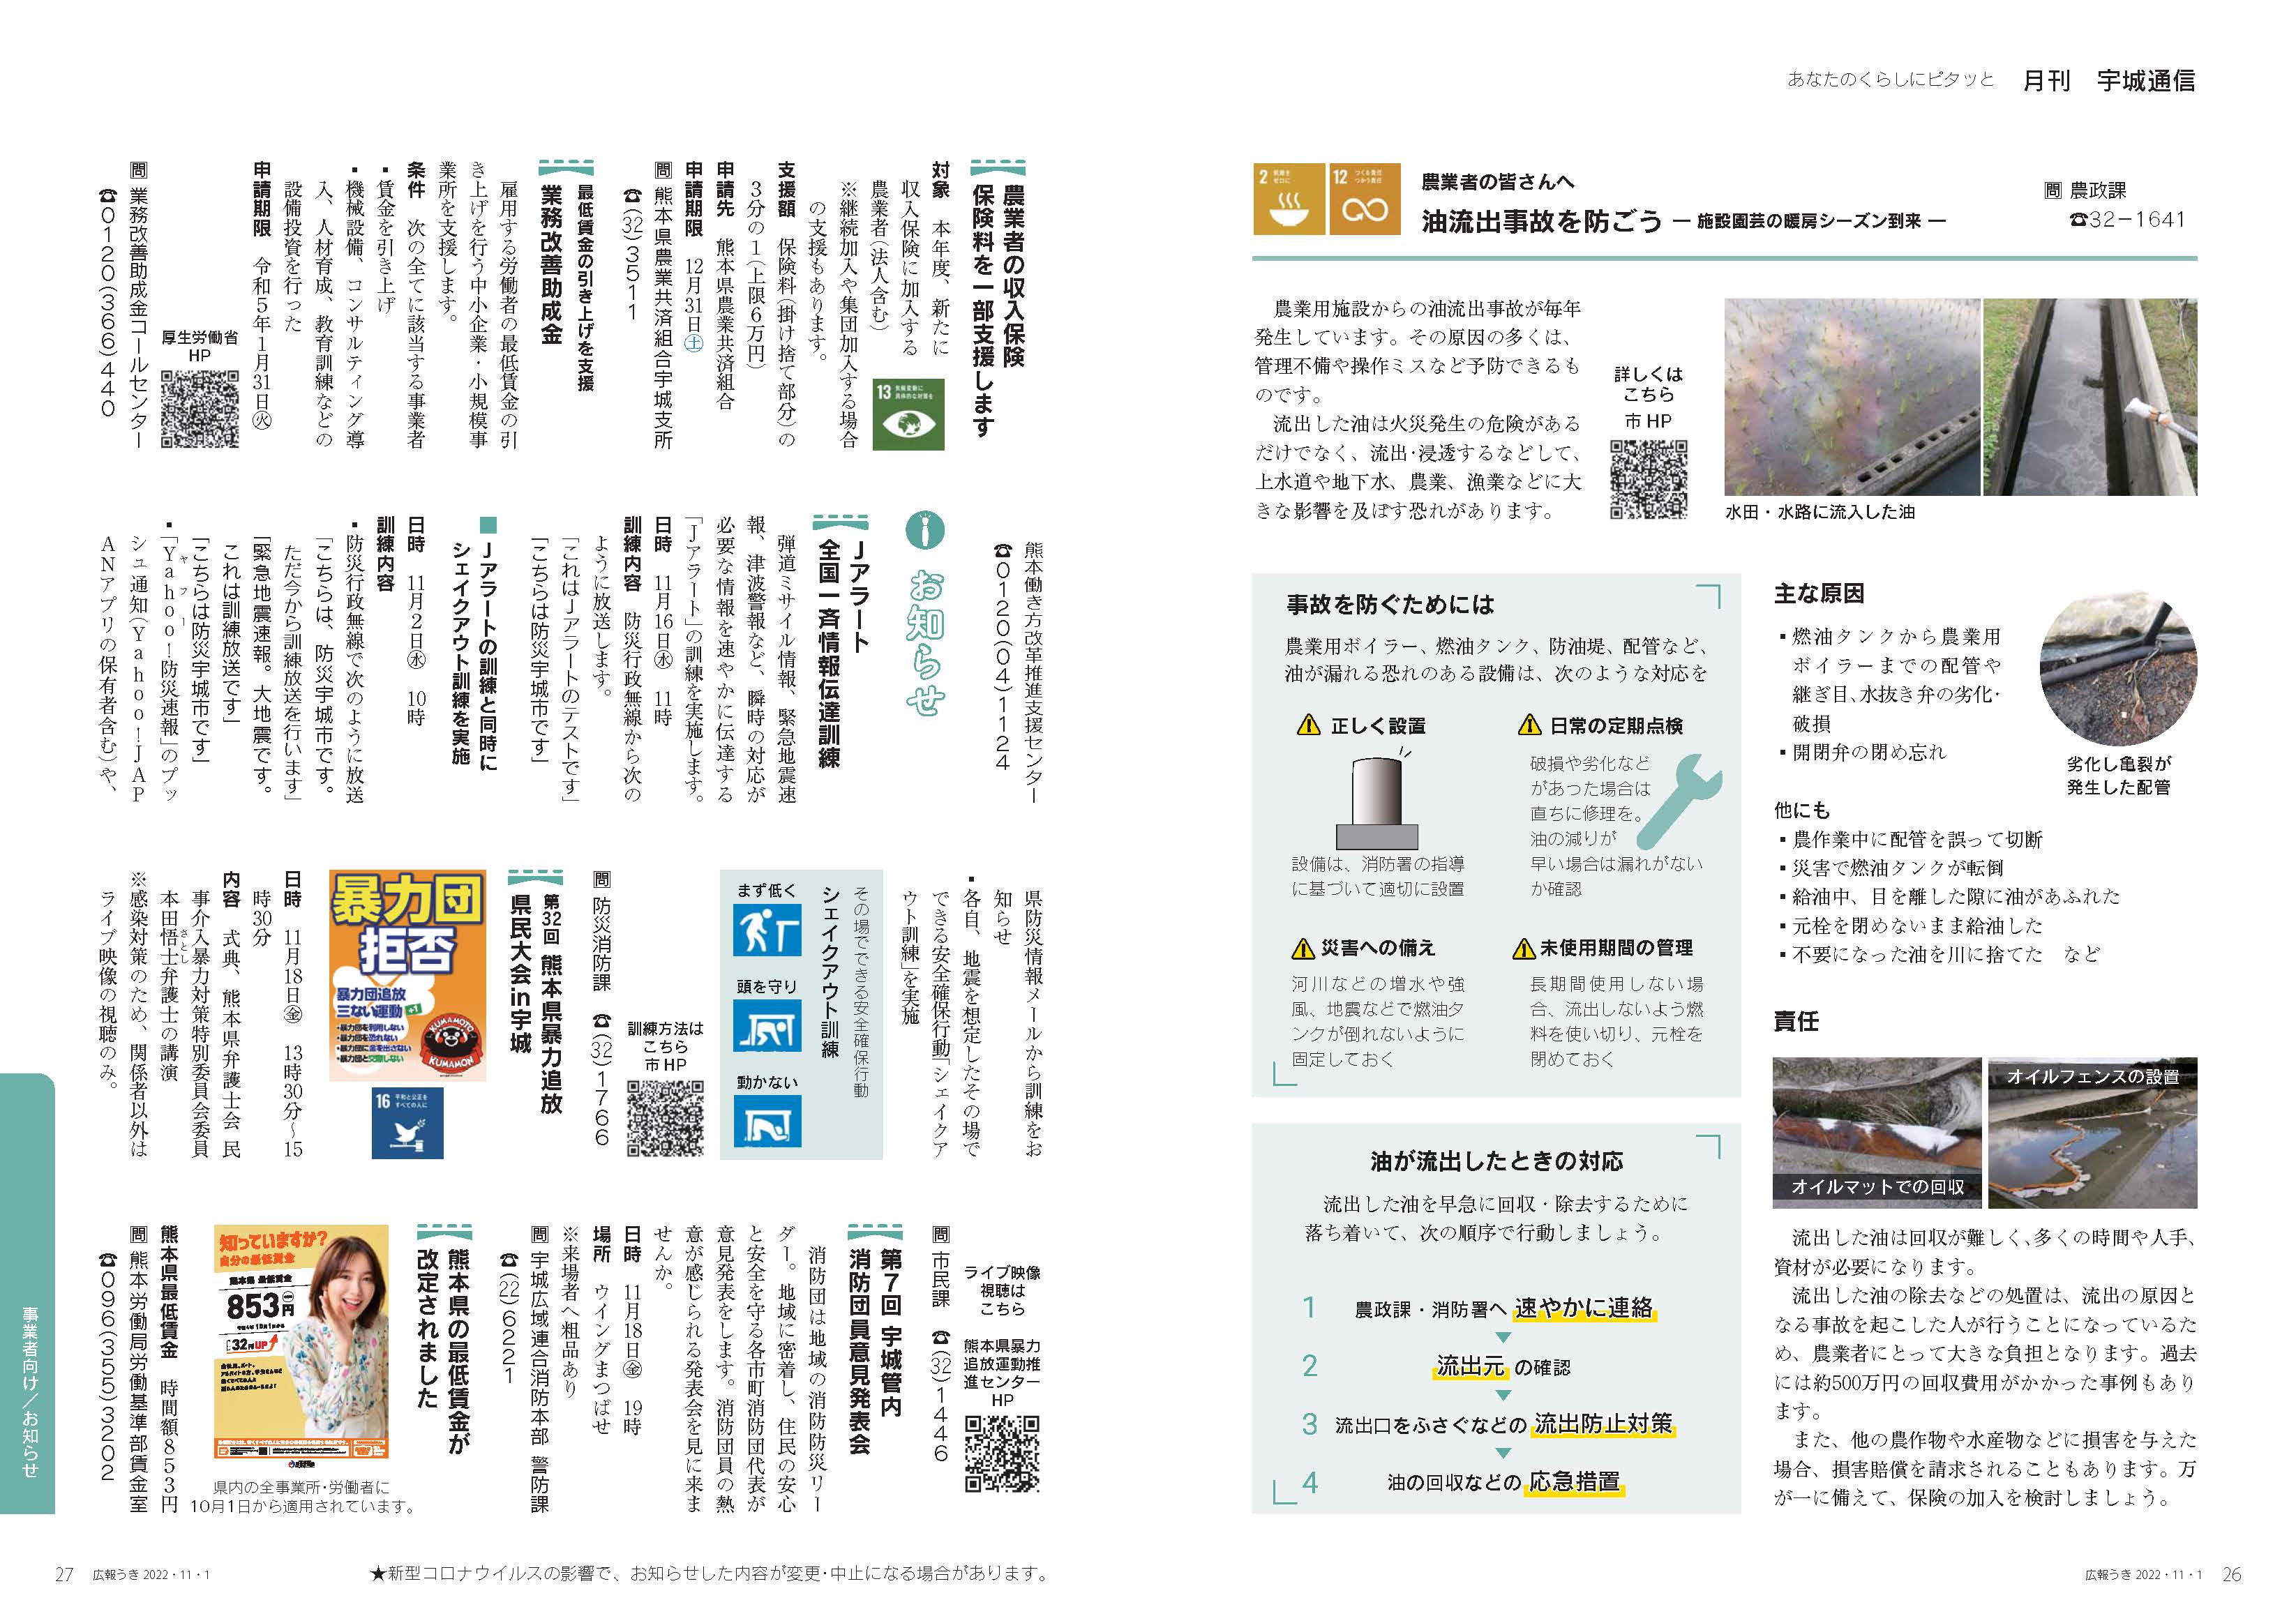 P26、P27　あなたのくらしにピタッと　月刊 宇城通信のページ画像、詳細はPDFリンクを参照ください。